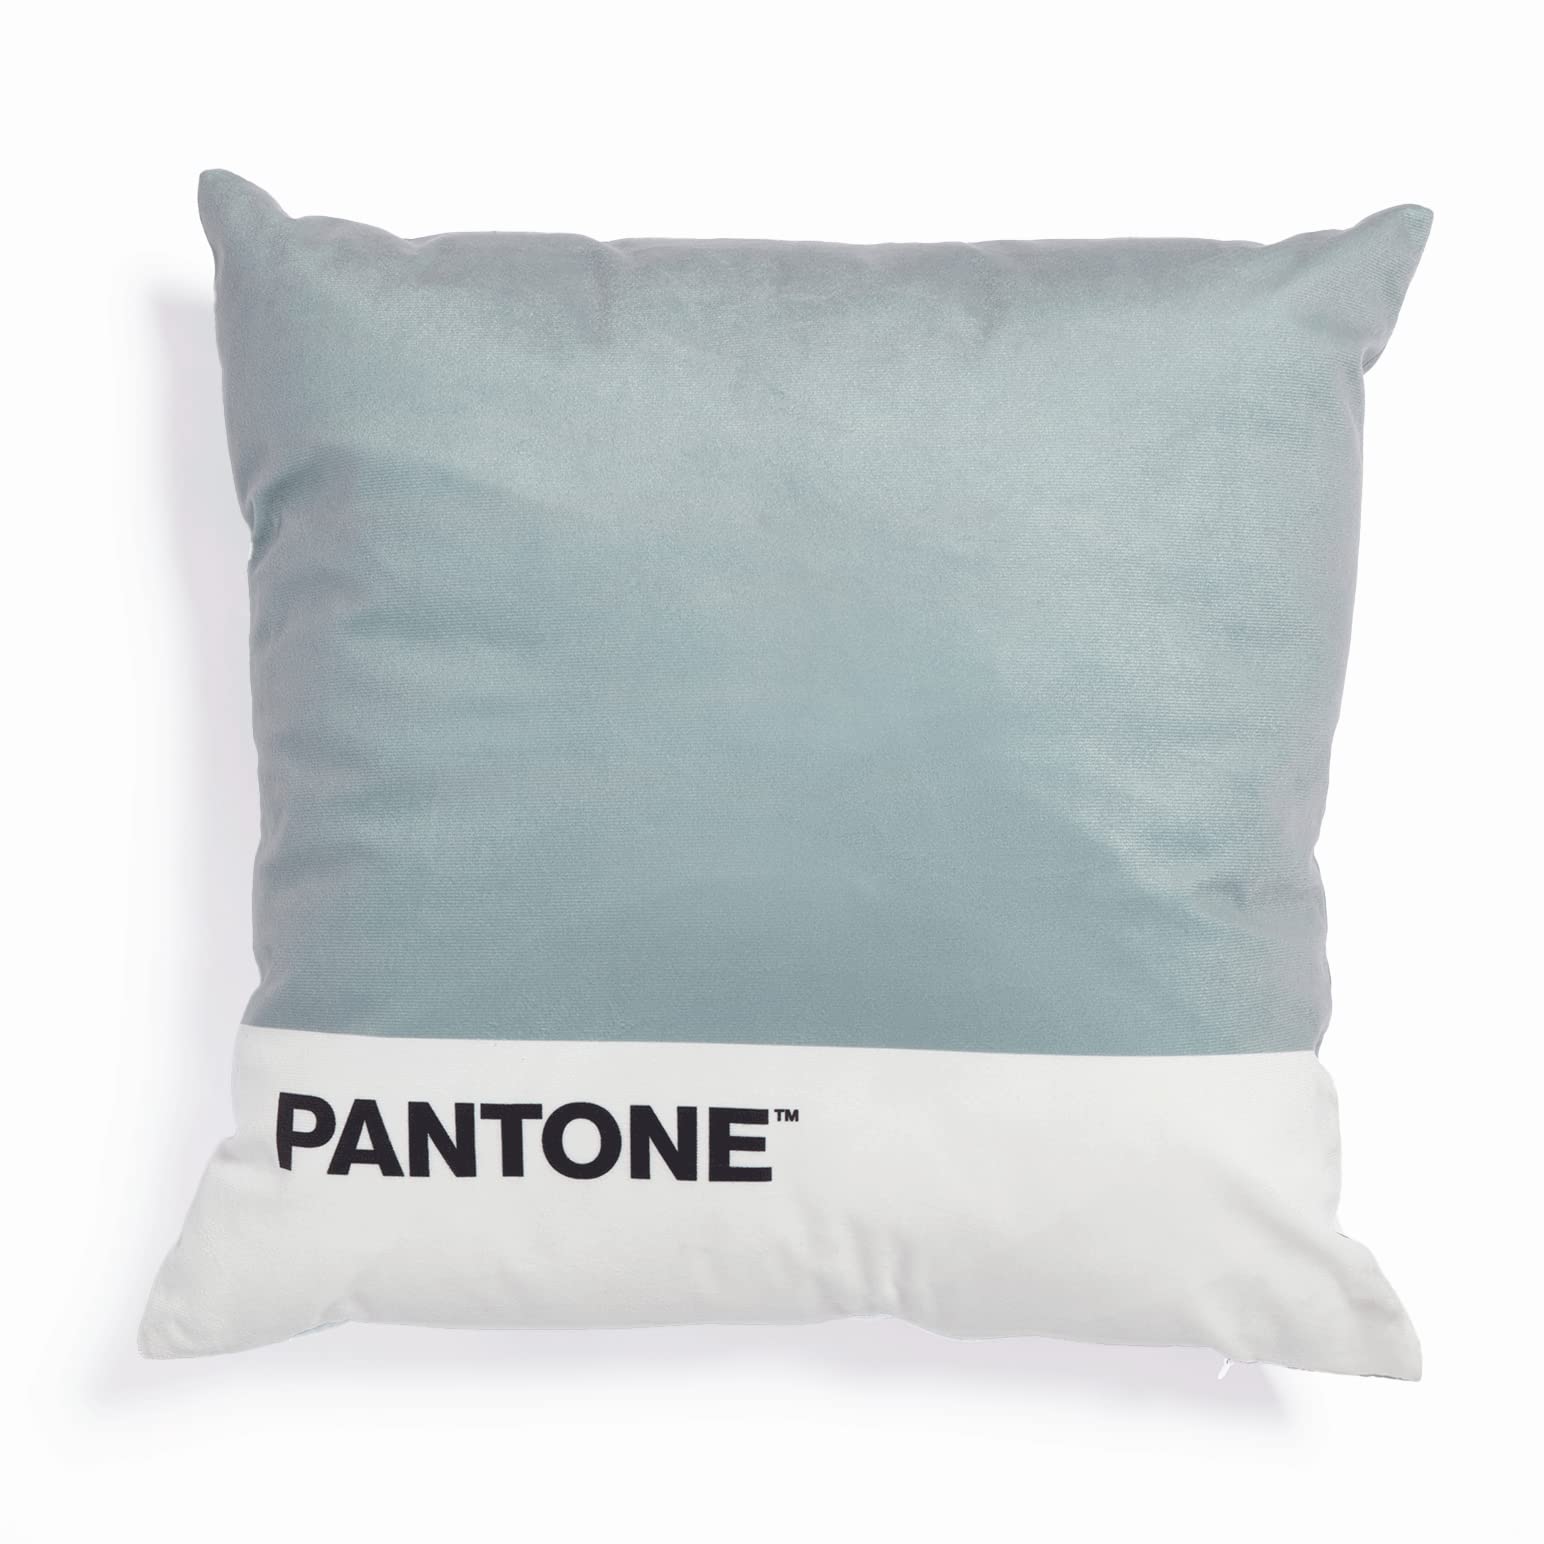 Pantone™ – Dekokissen, gepolstert, 40 x 40 cm, mit verdecktem Reißverschluss, Füllung 350 g/m², Grau